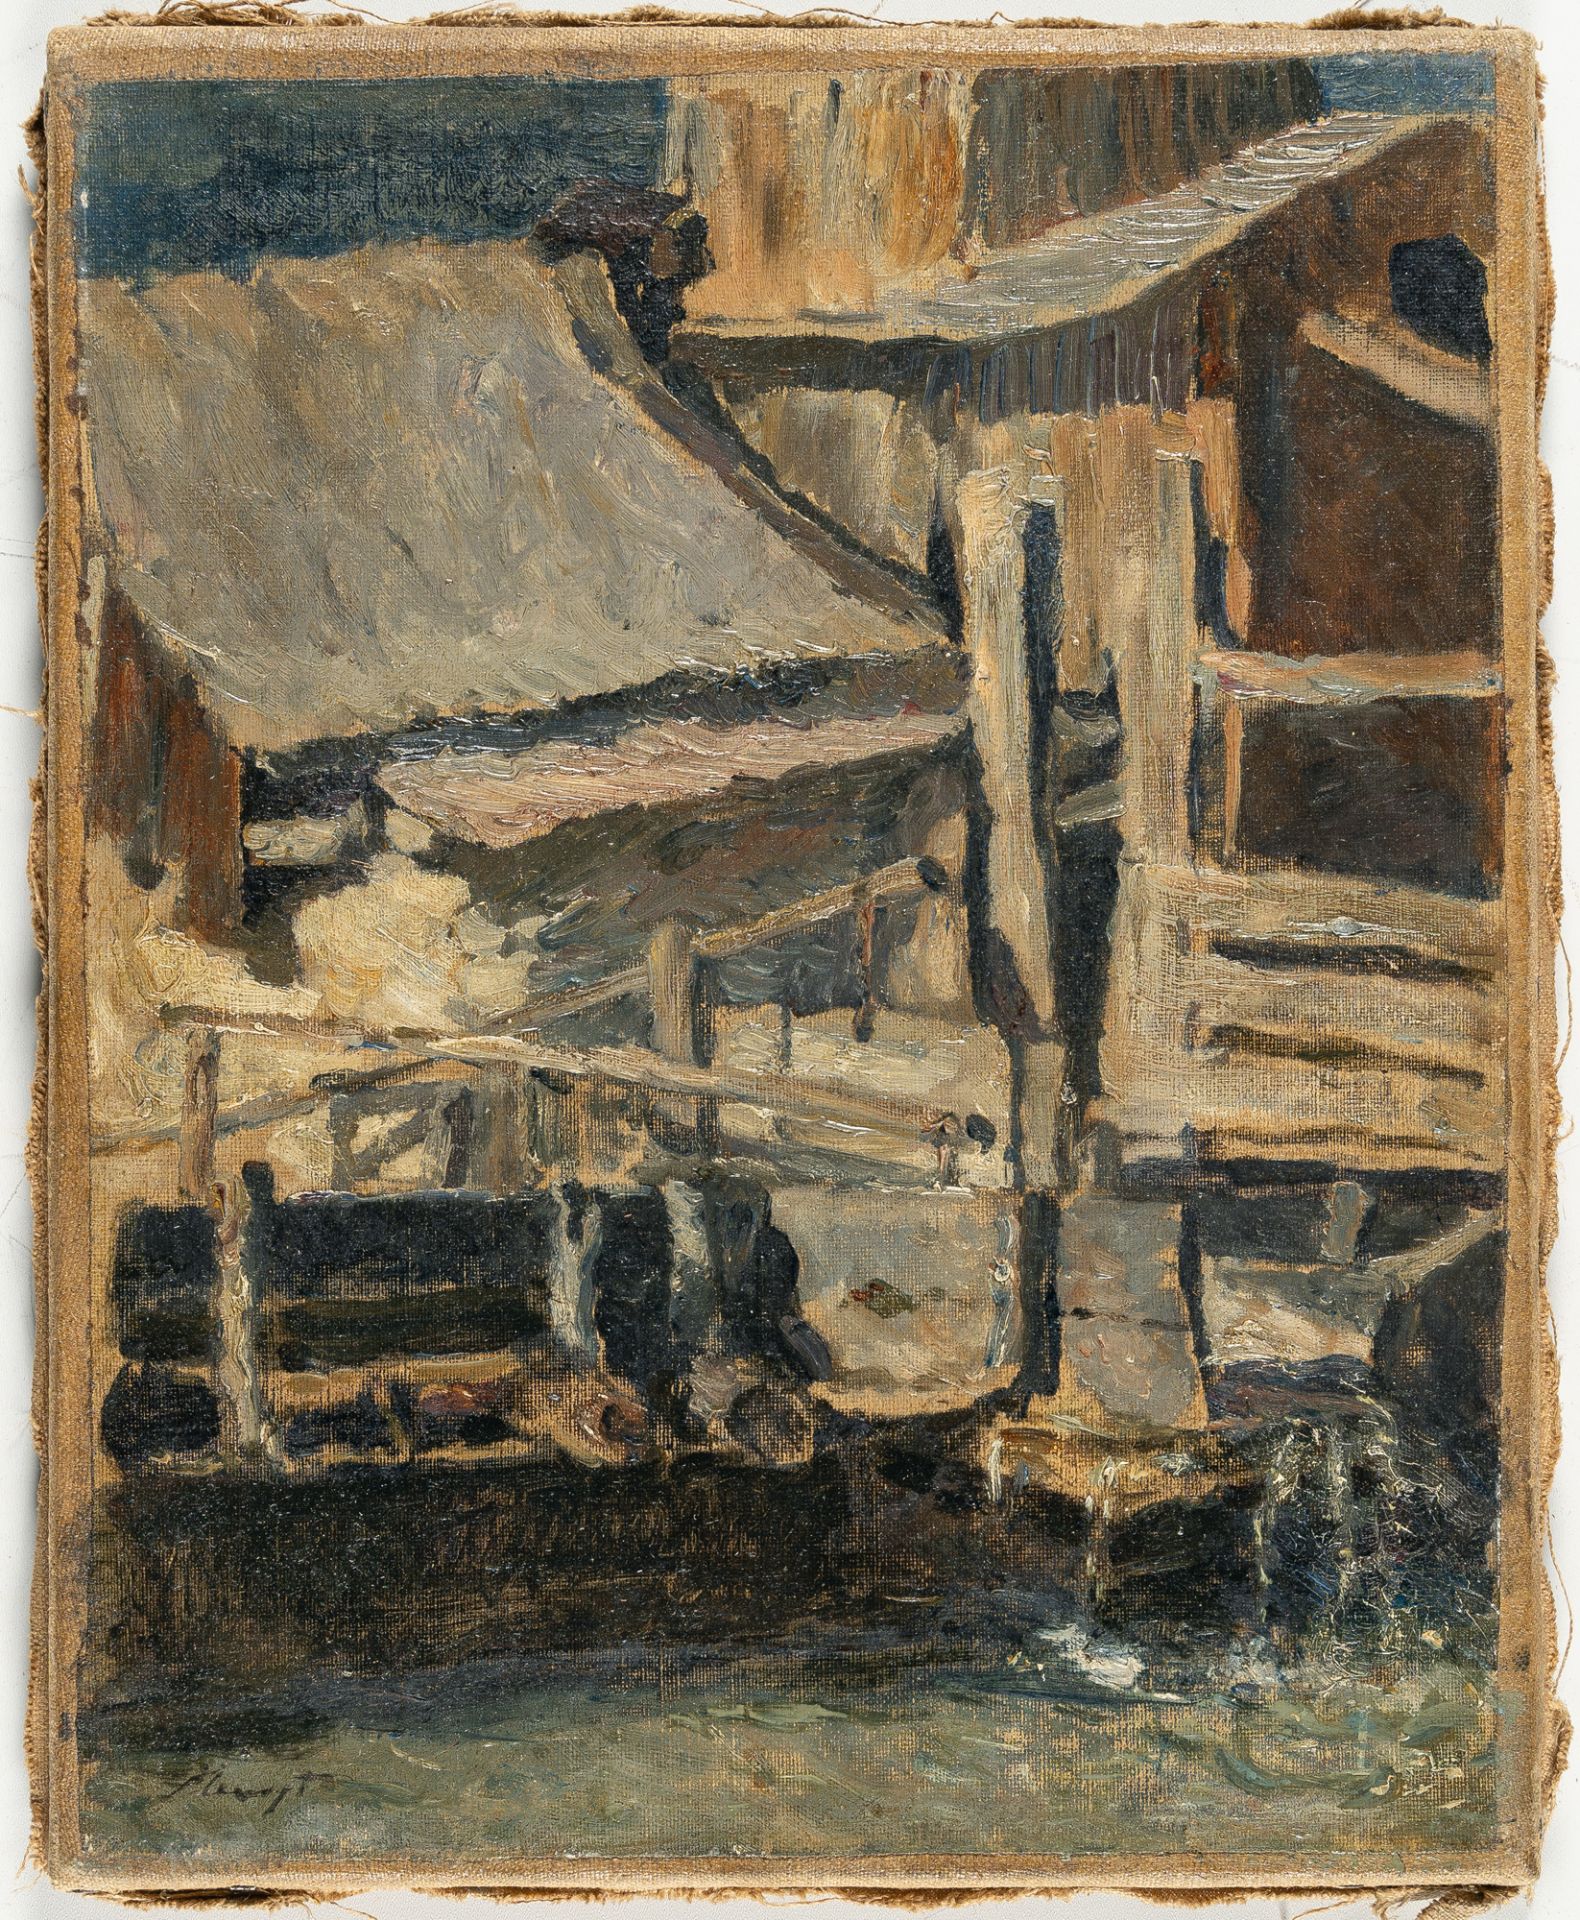 Max Slevogt (1868 Landshut - Neukastel/Pfalz 1932), Old millOil on canvas, relined. (Around 1890). - Image 2 of 3